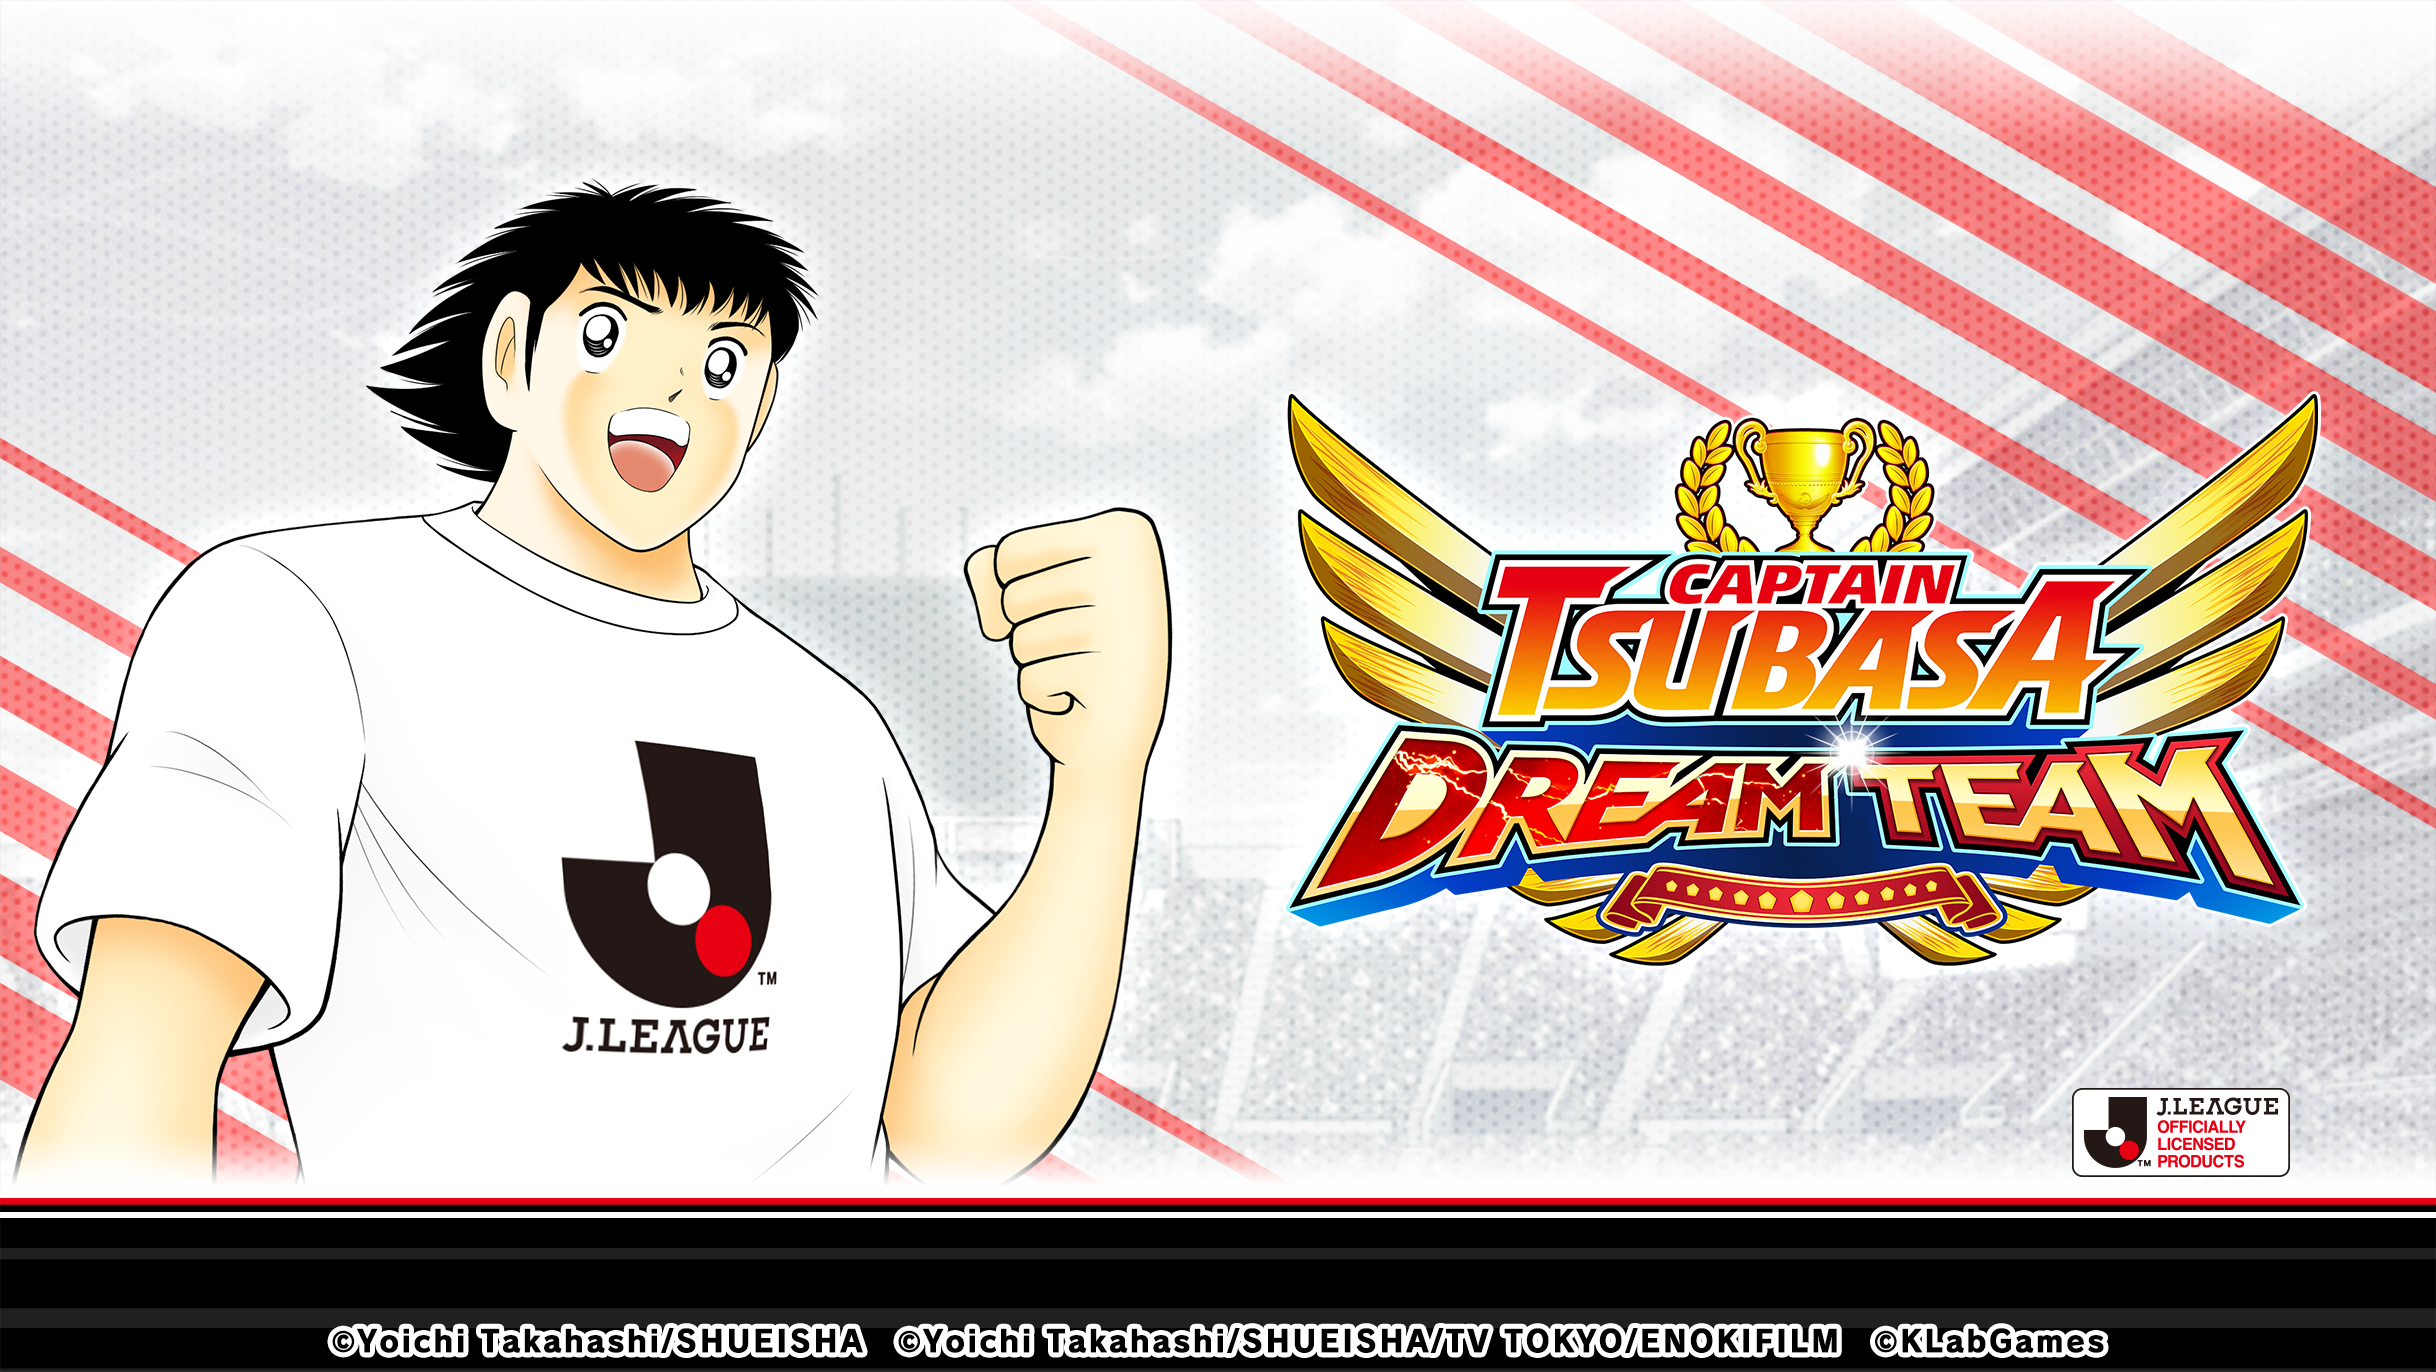 เกม “กัปตันซึบาสะ: ดรีมทีม (Captain Tsubasa: Dream Team)” เปิดตัวตัวละครผู้เล่นใหม่ในชุดยูนิฟอร์มทางการ J.League 2021 แล้ววันนี้!